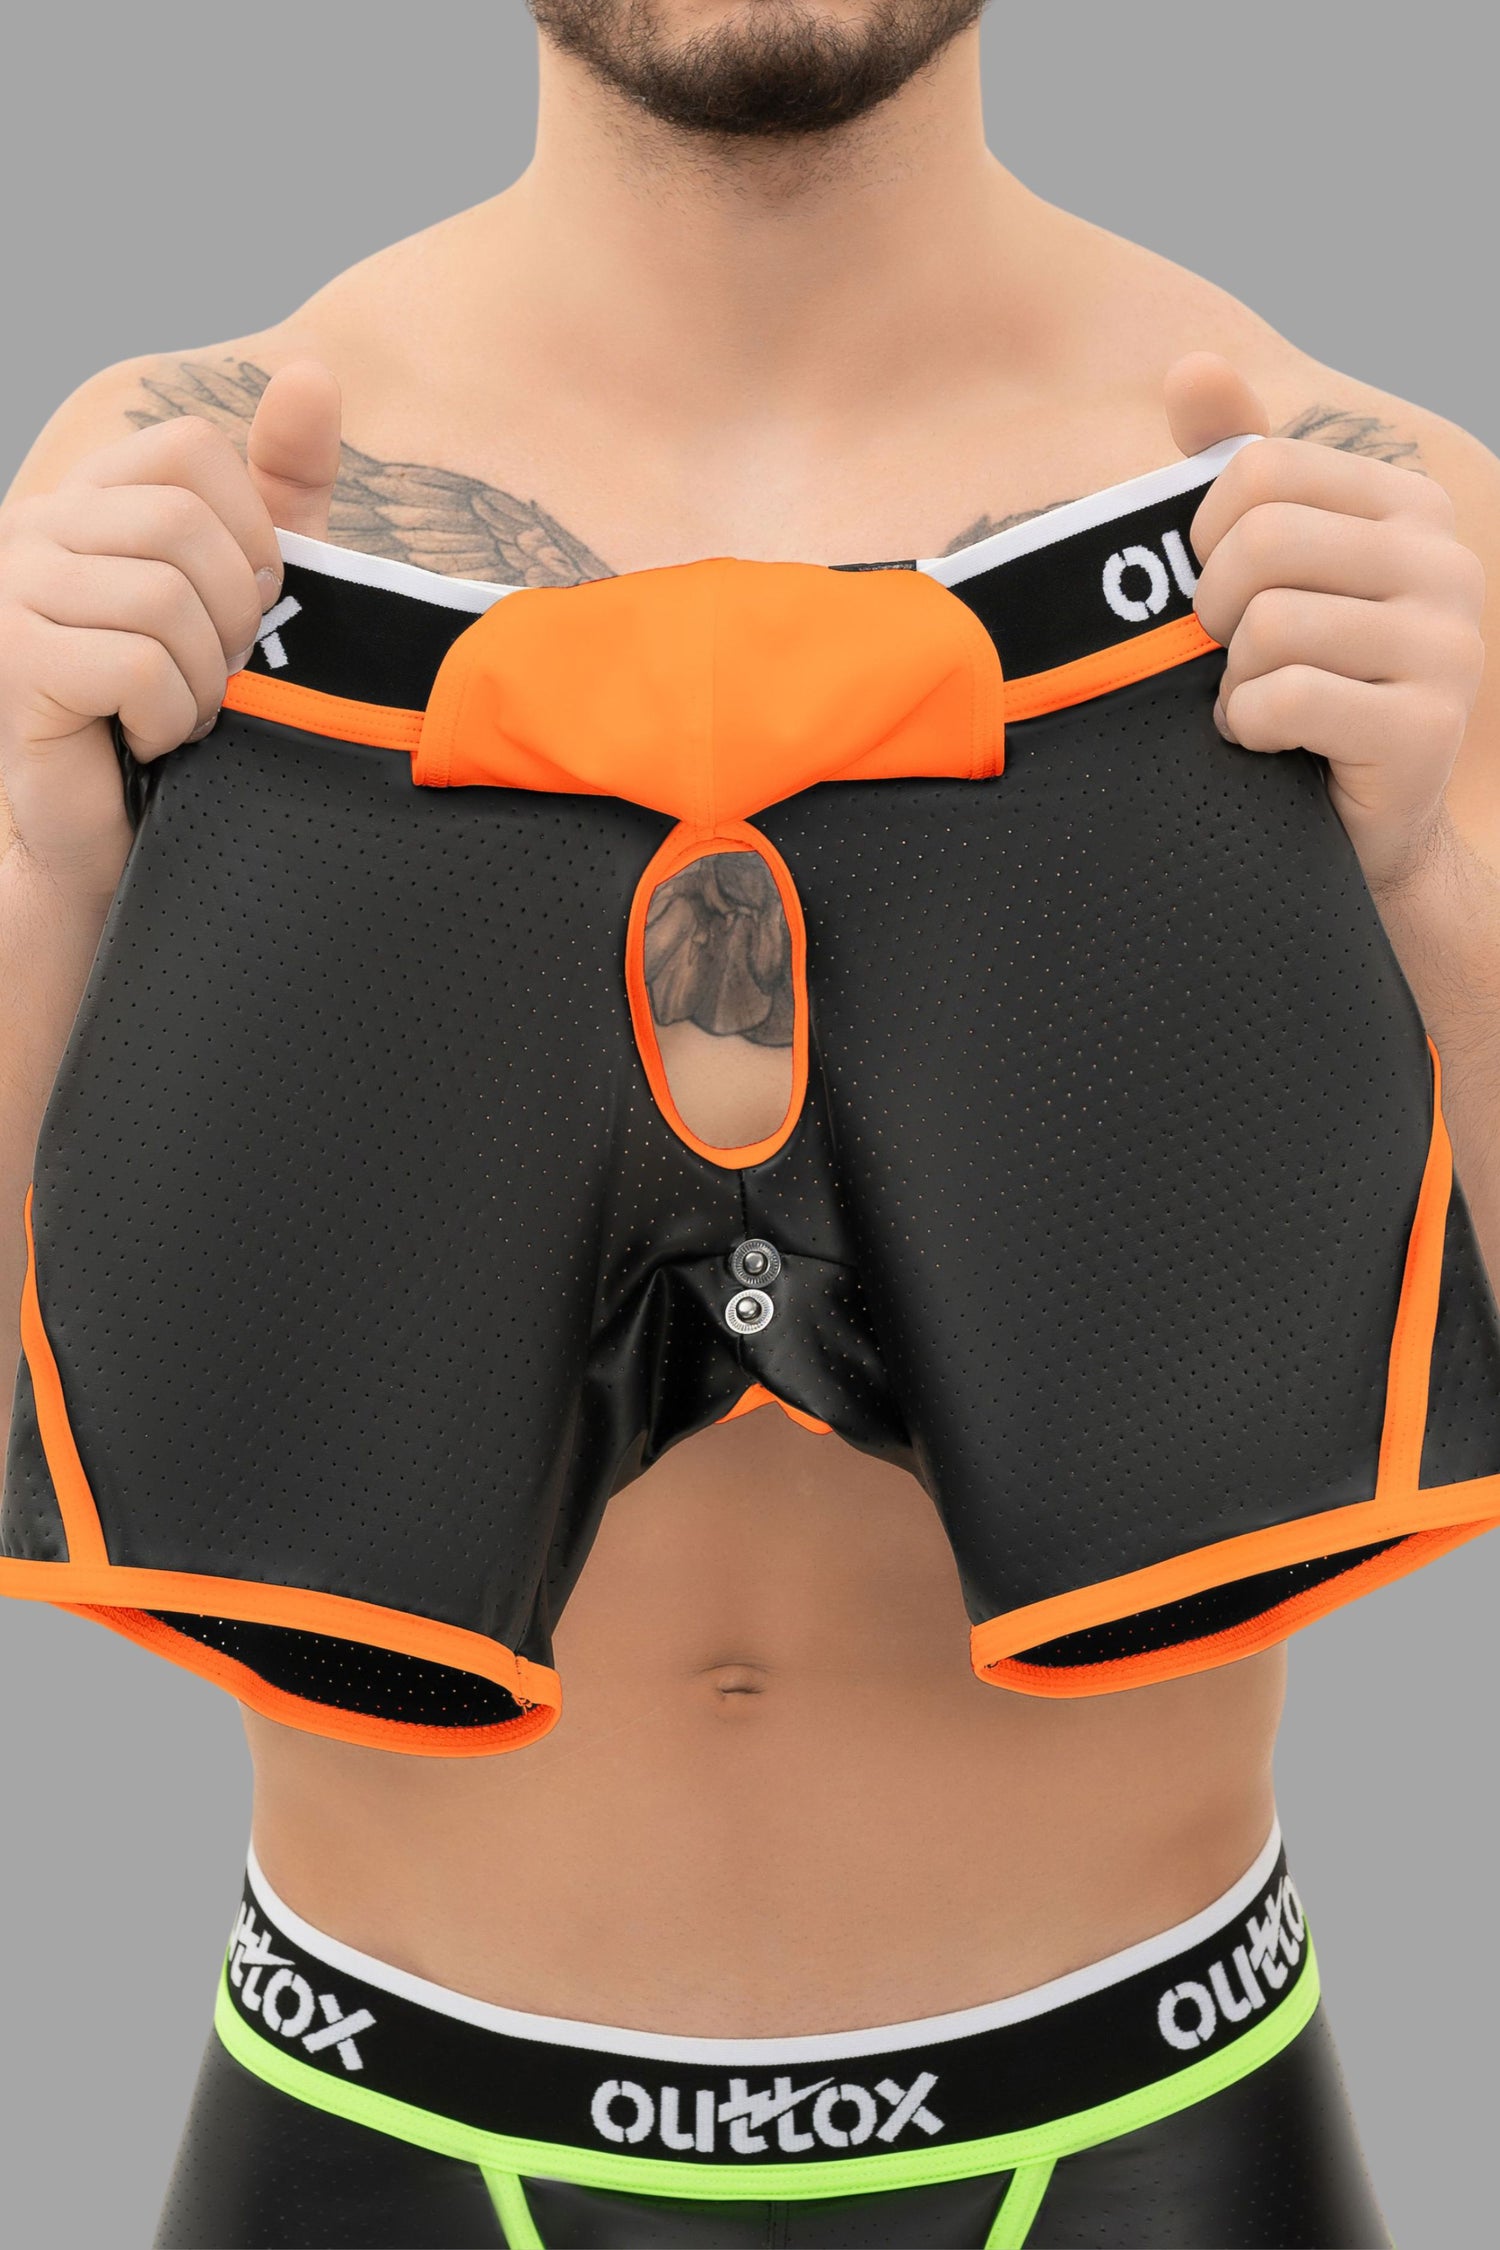 Outtox. Pantalones cortos traseros abiertos con bragueta a presión. Negro+Naranja